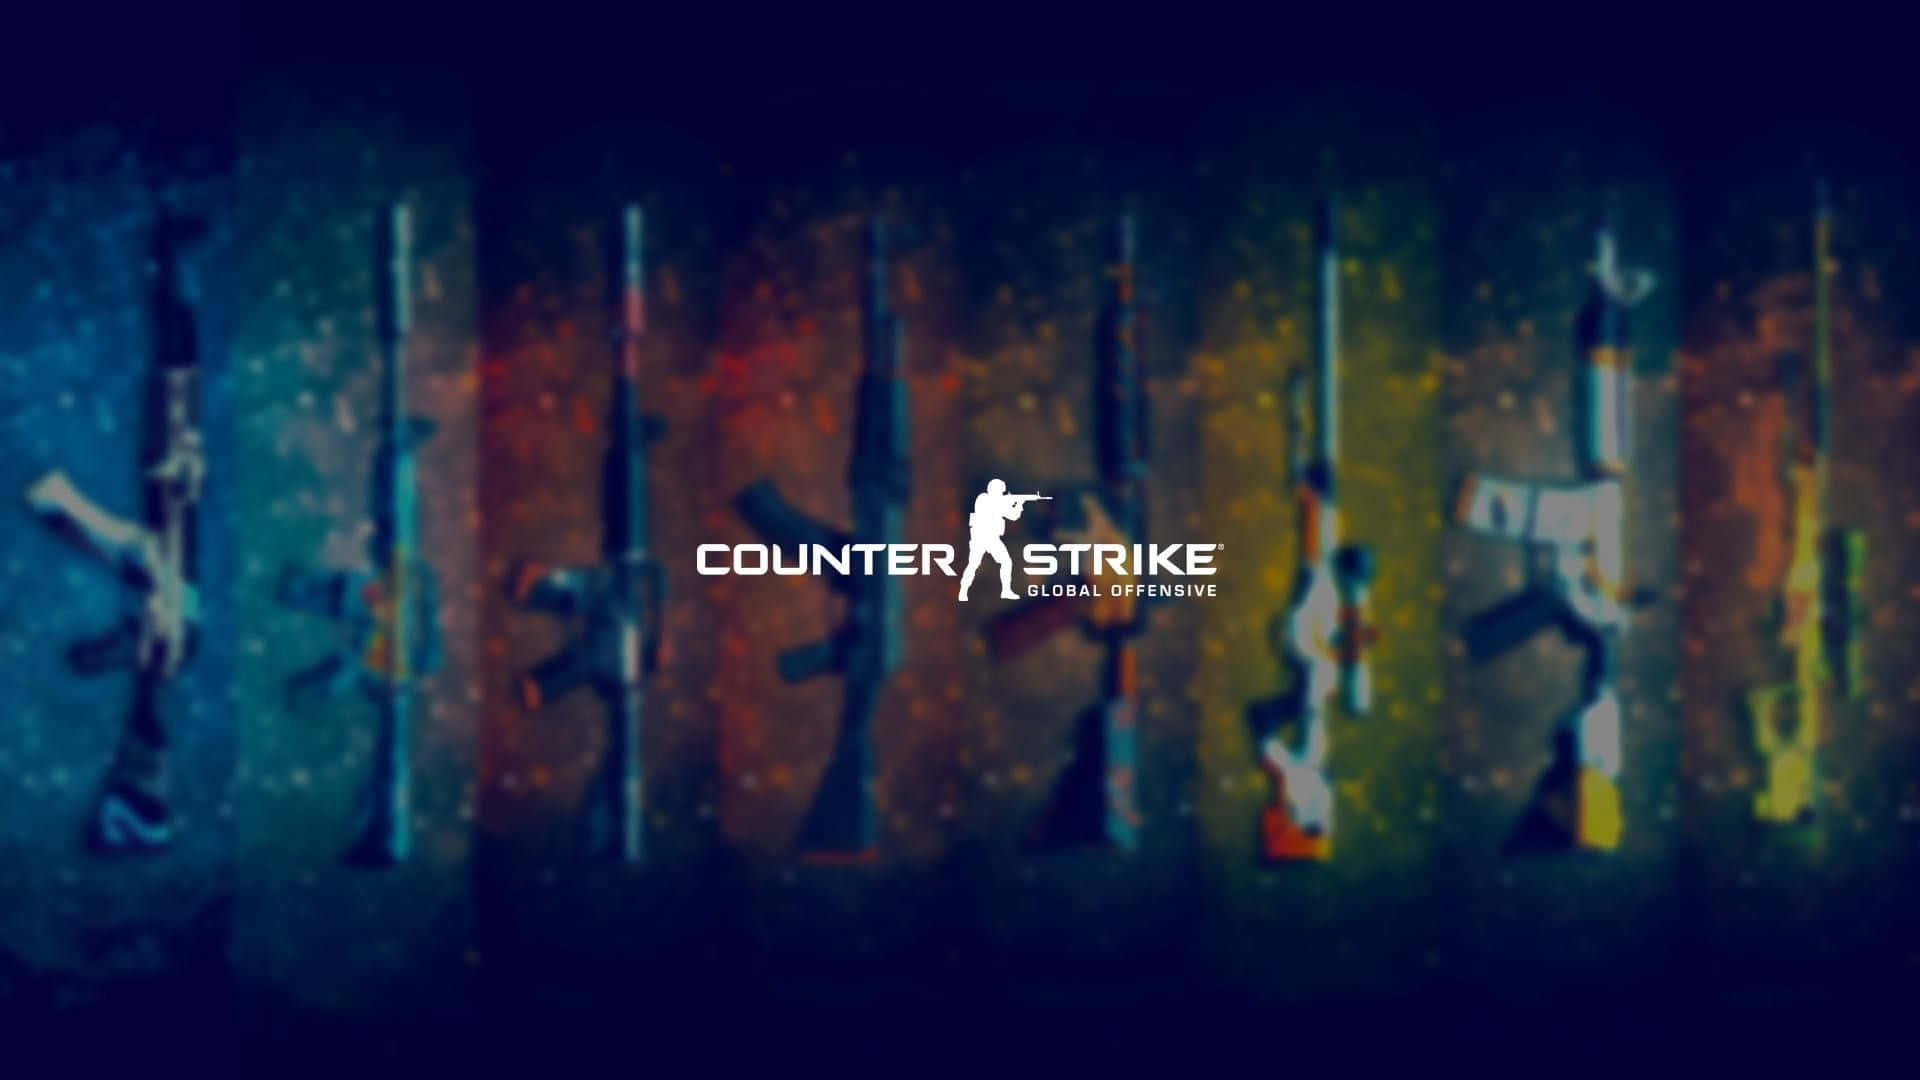 Valav Vapen Counter Strike Global Offensive Skrivbordsbakgrund. Wallpaper